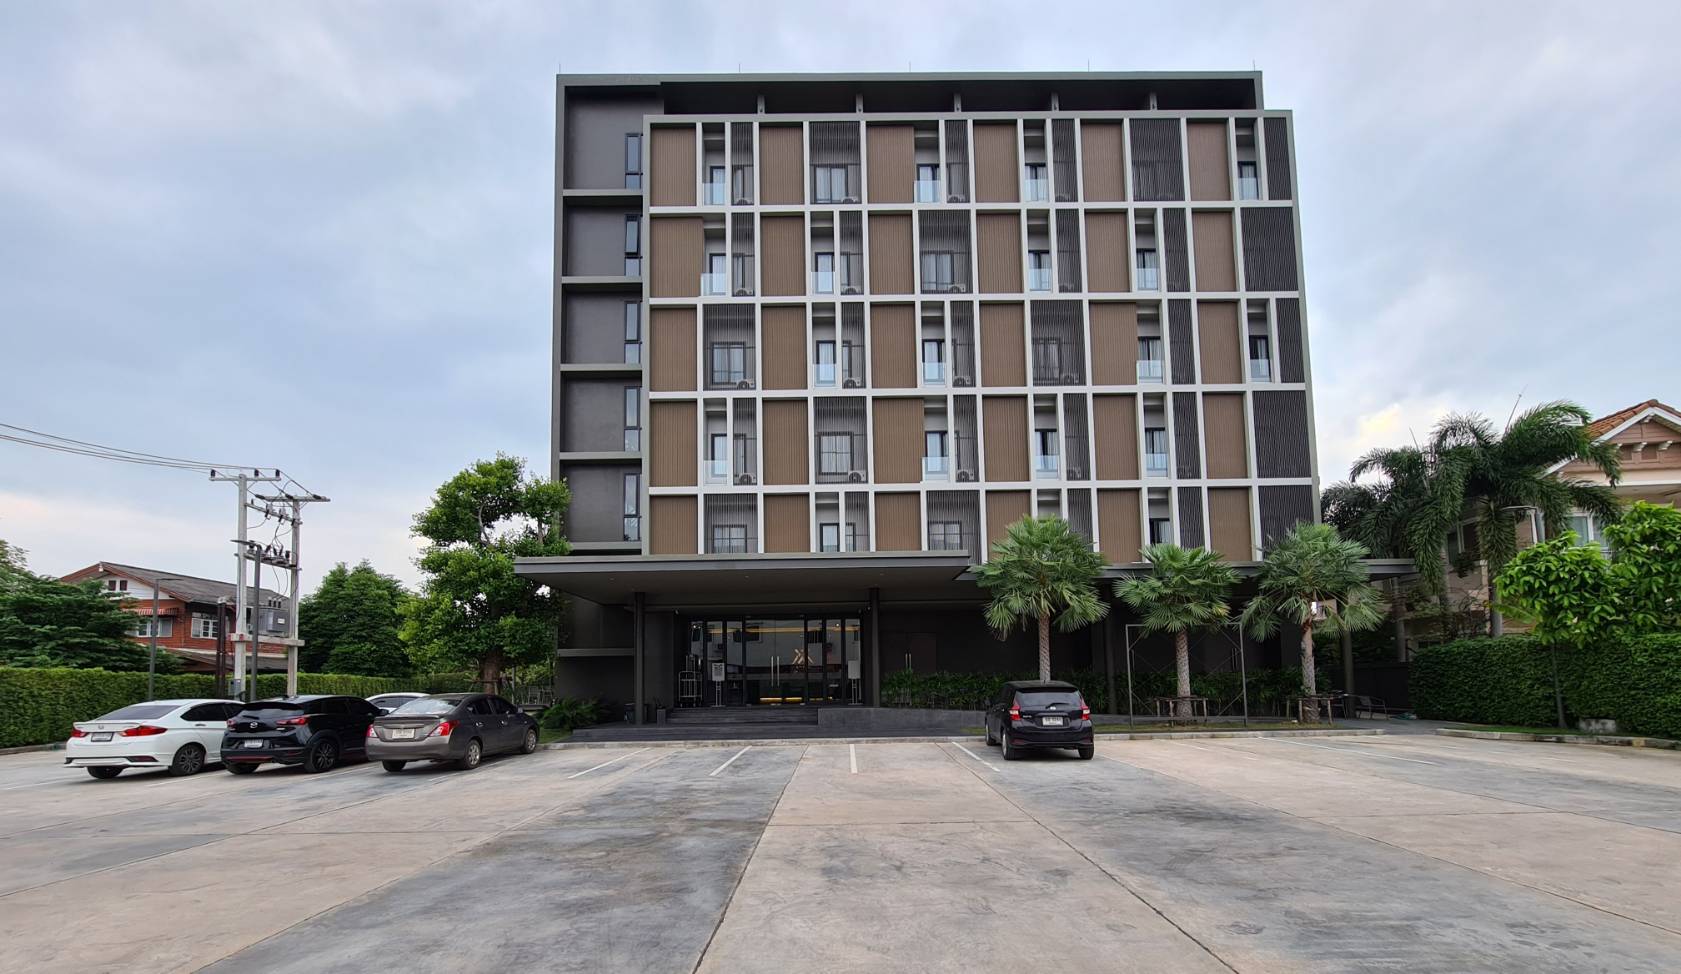 รีวิว XOTEL โรงแรมโซเทล ที่พักใหม่เมืองขอนแก่น - Pantip